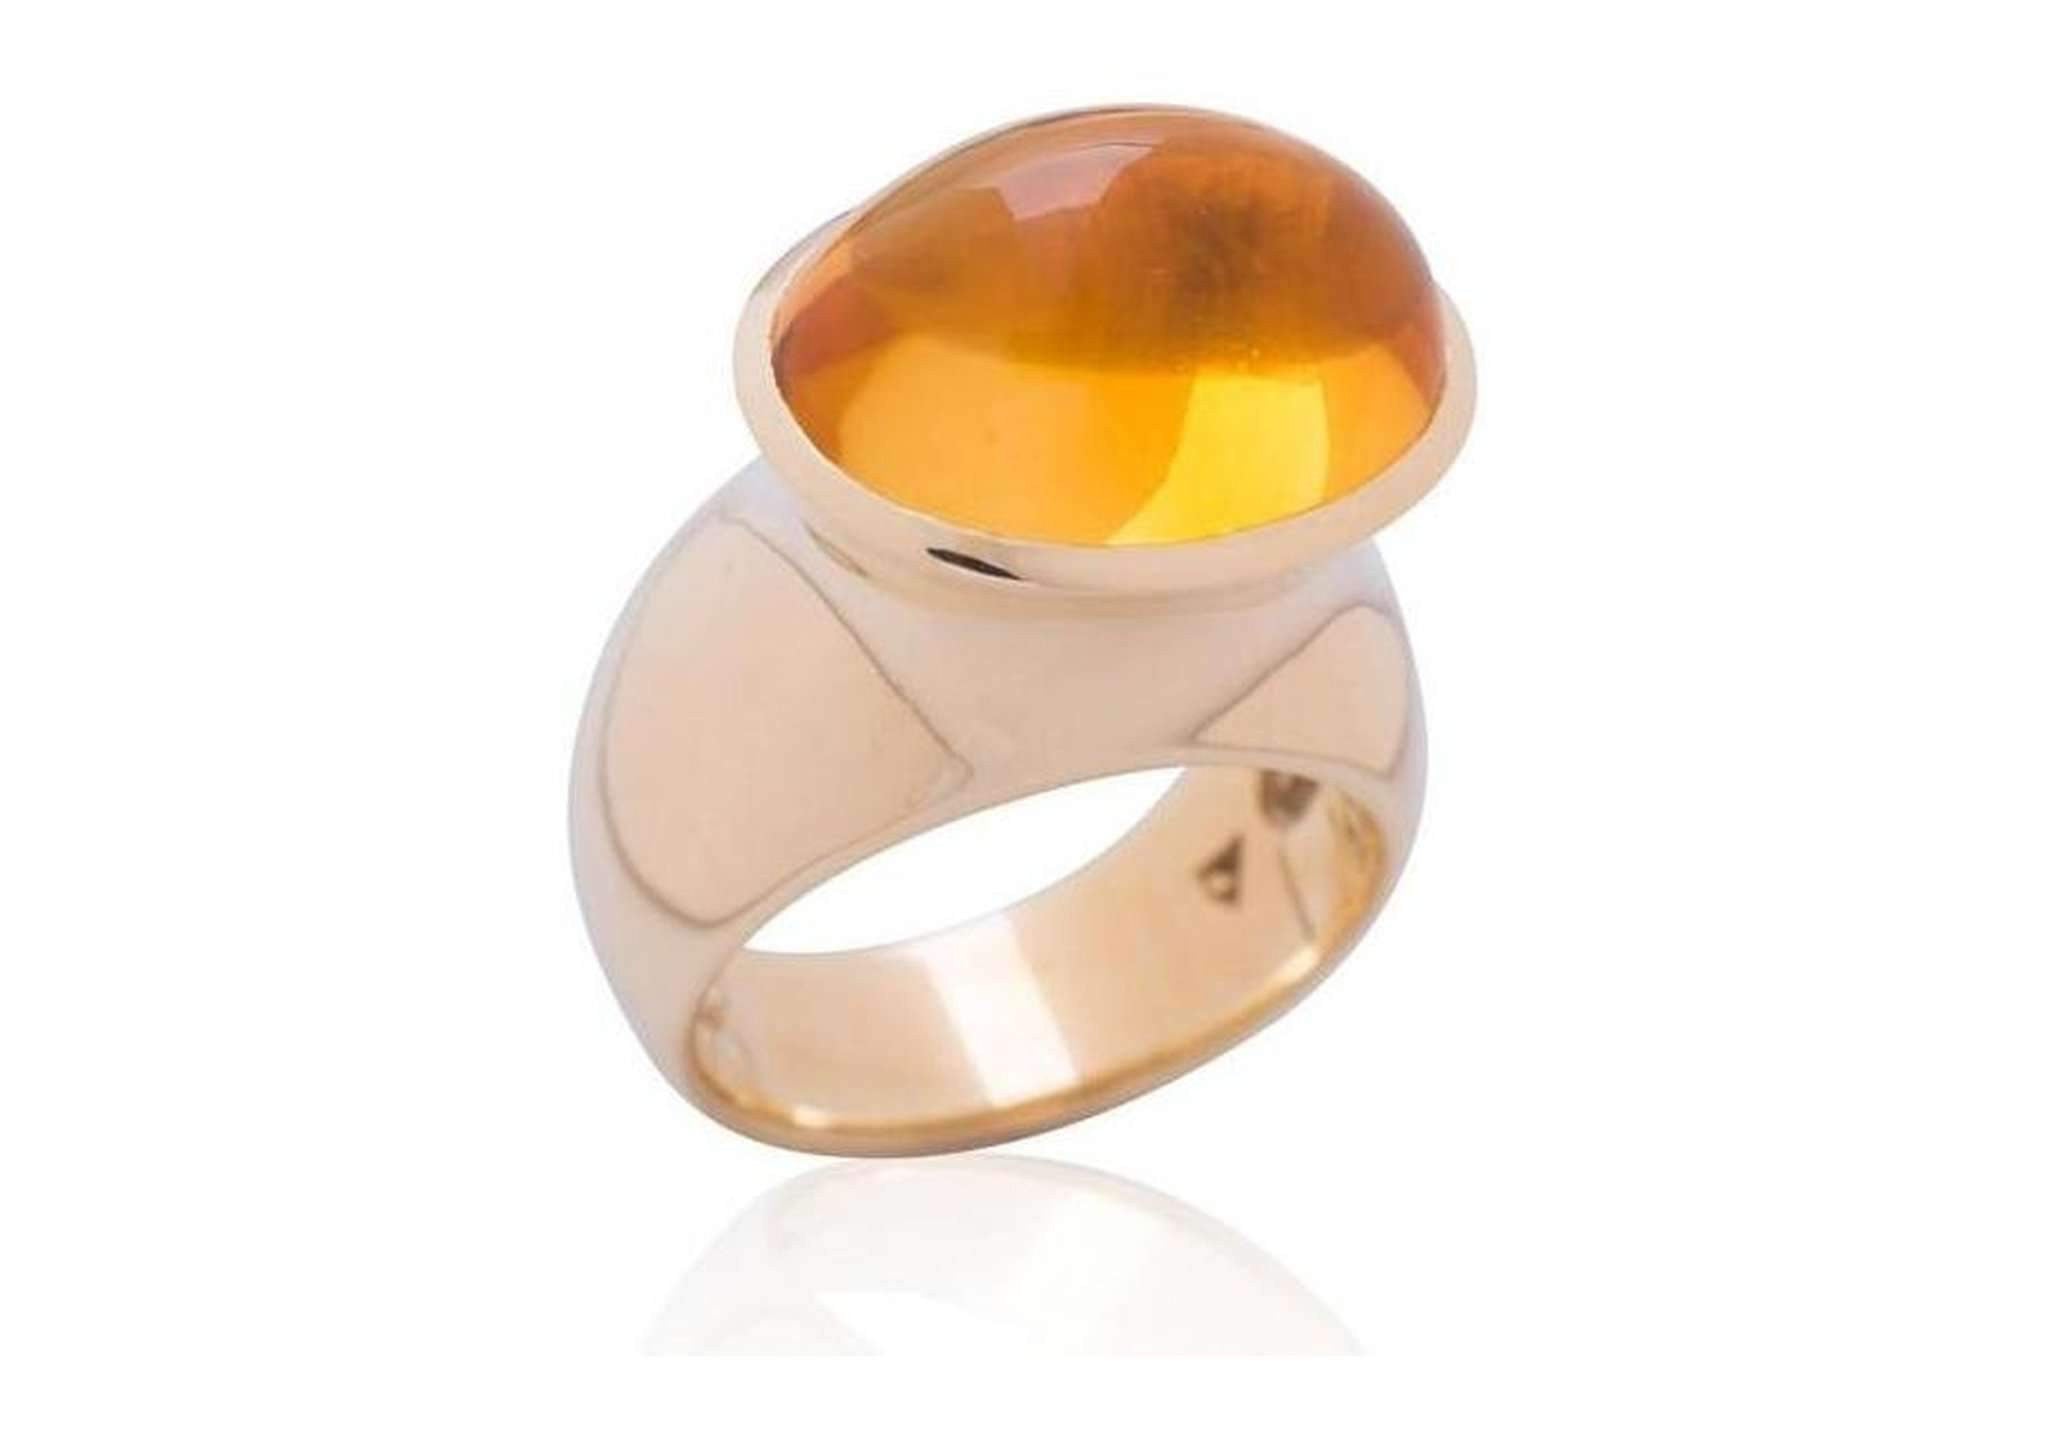 Luxurious Golden Citrine Ring. – Jens Hansen